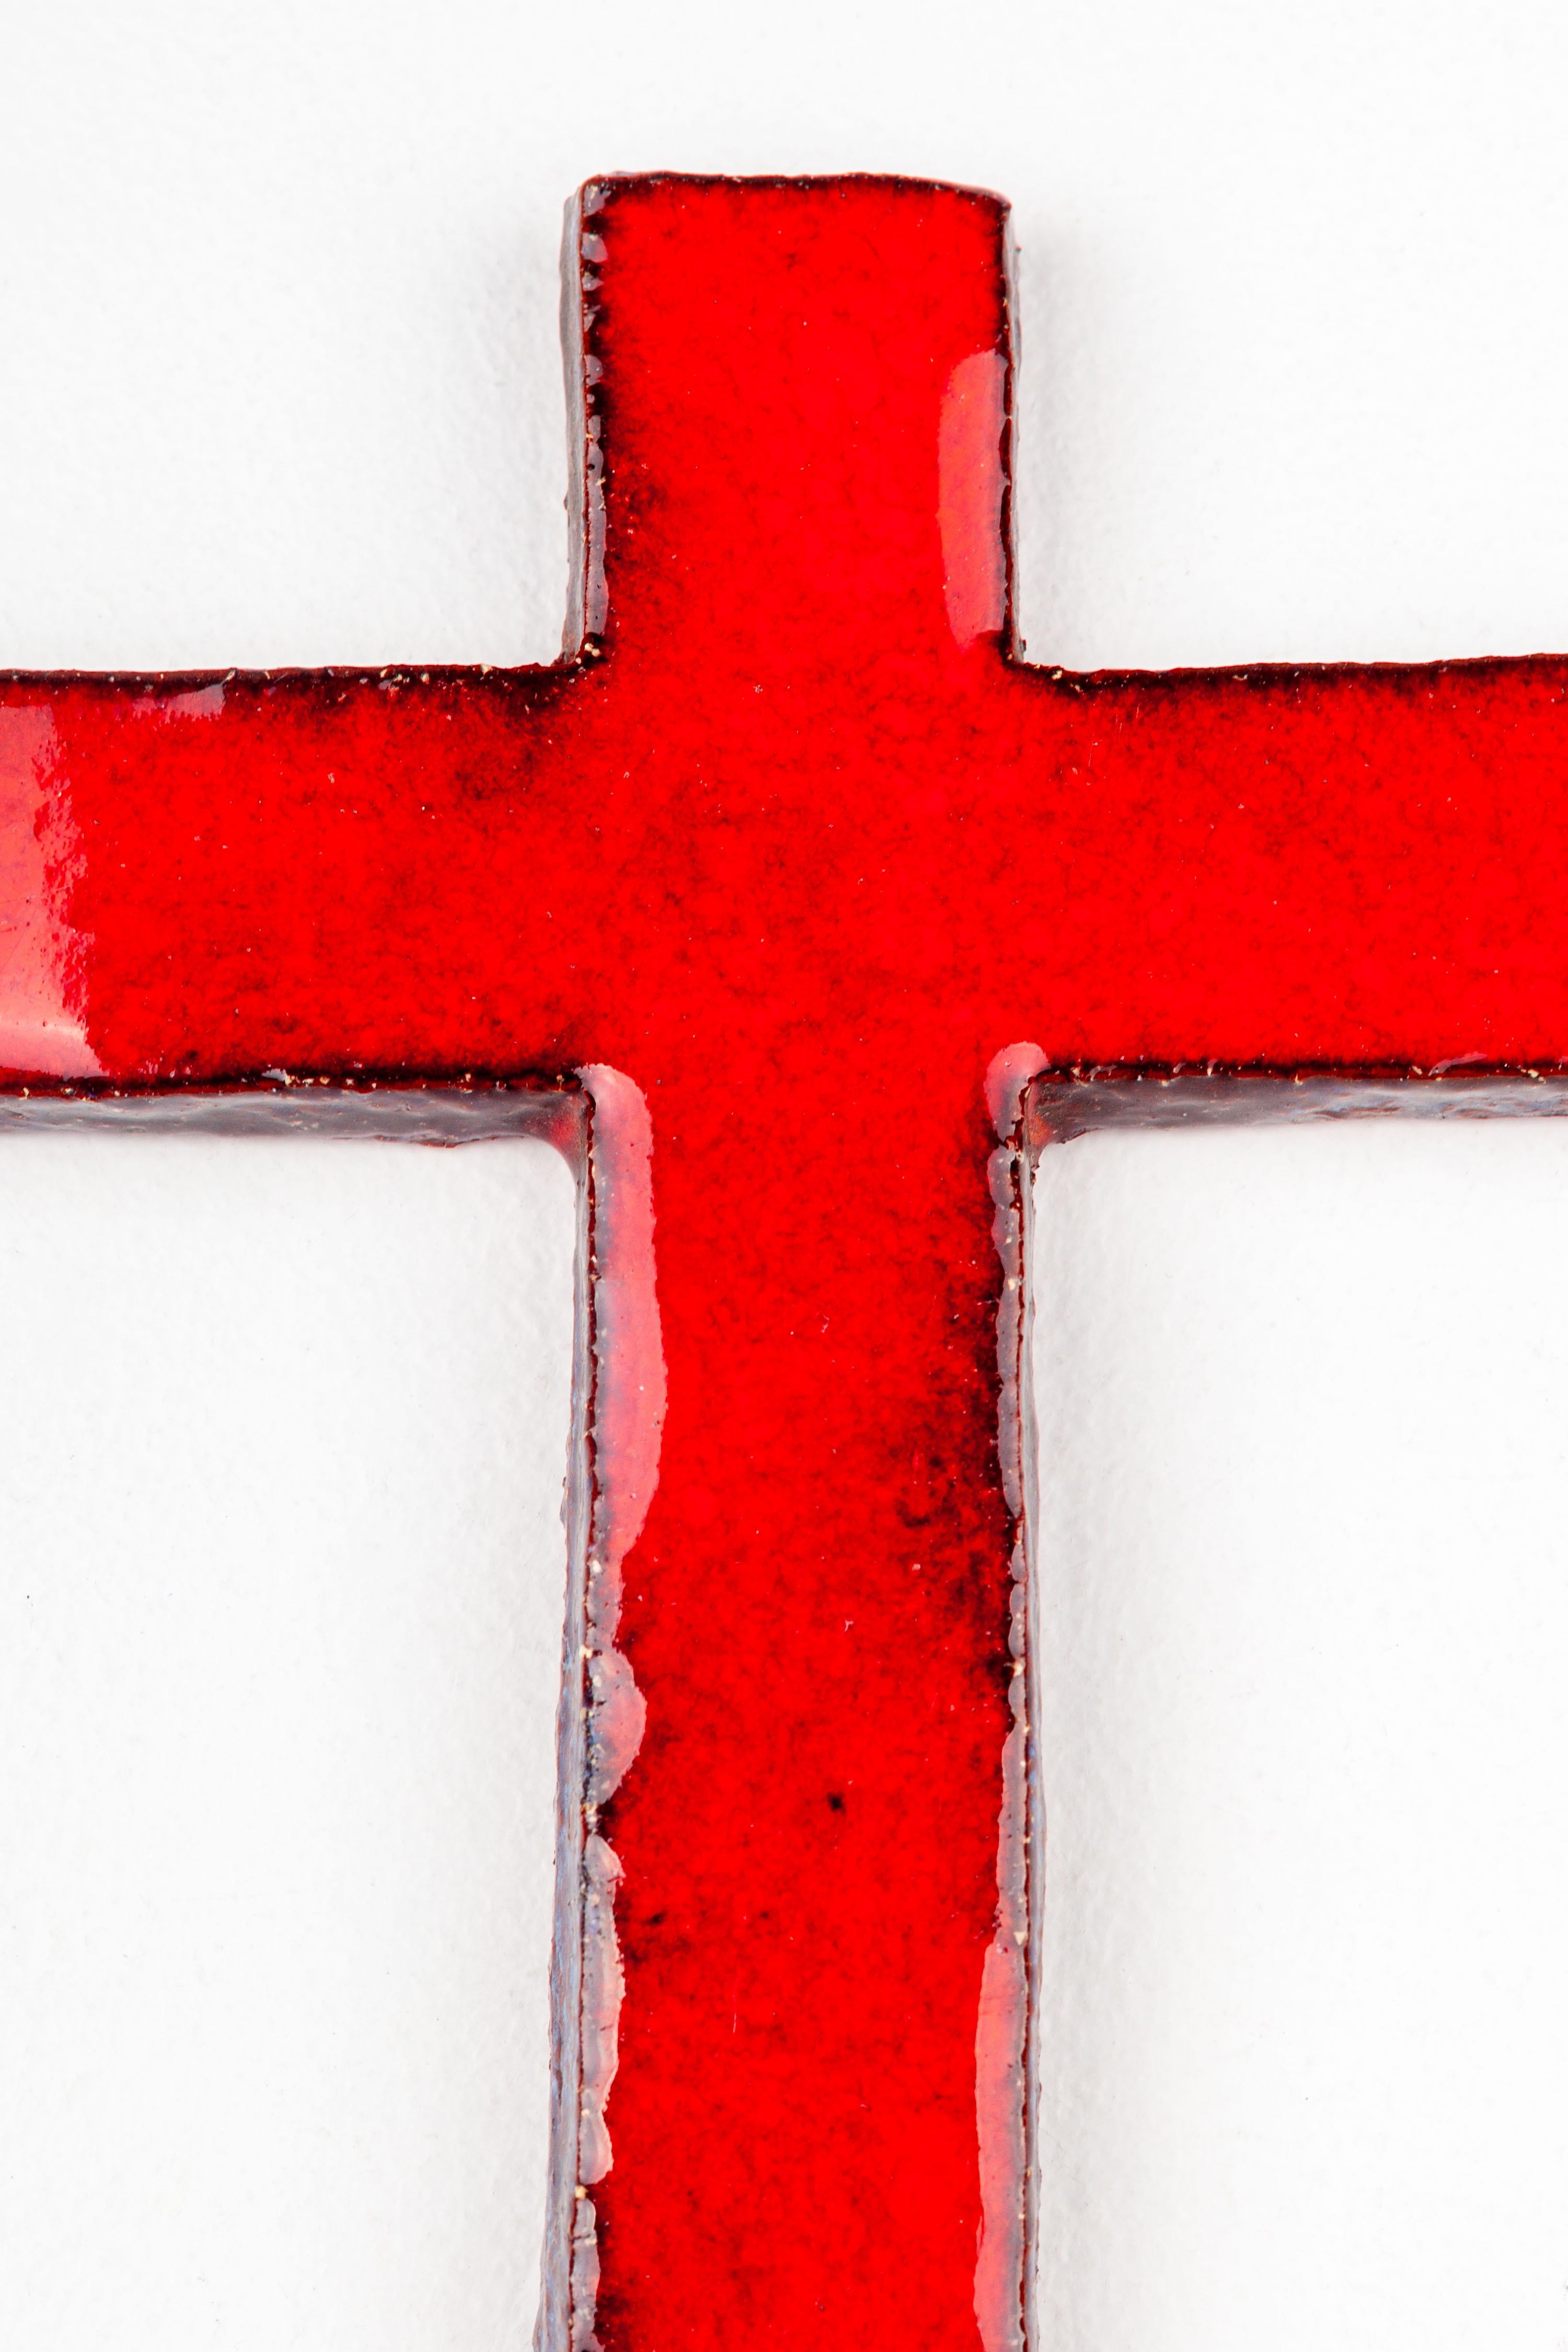 European Mid-Century Modern Red Glazed Ceramic Cross For Sale